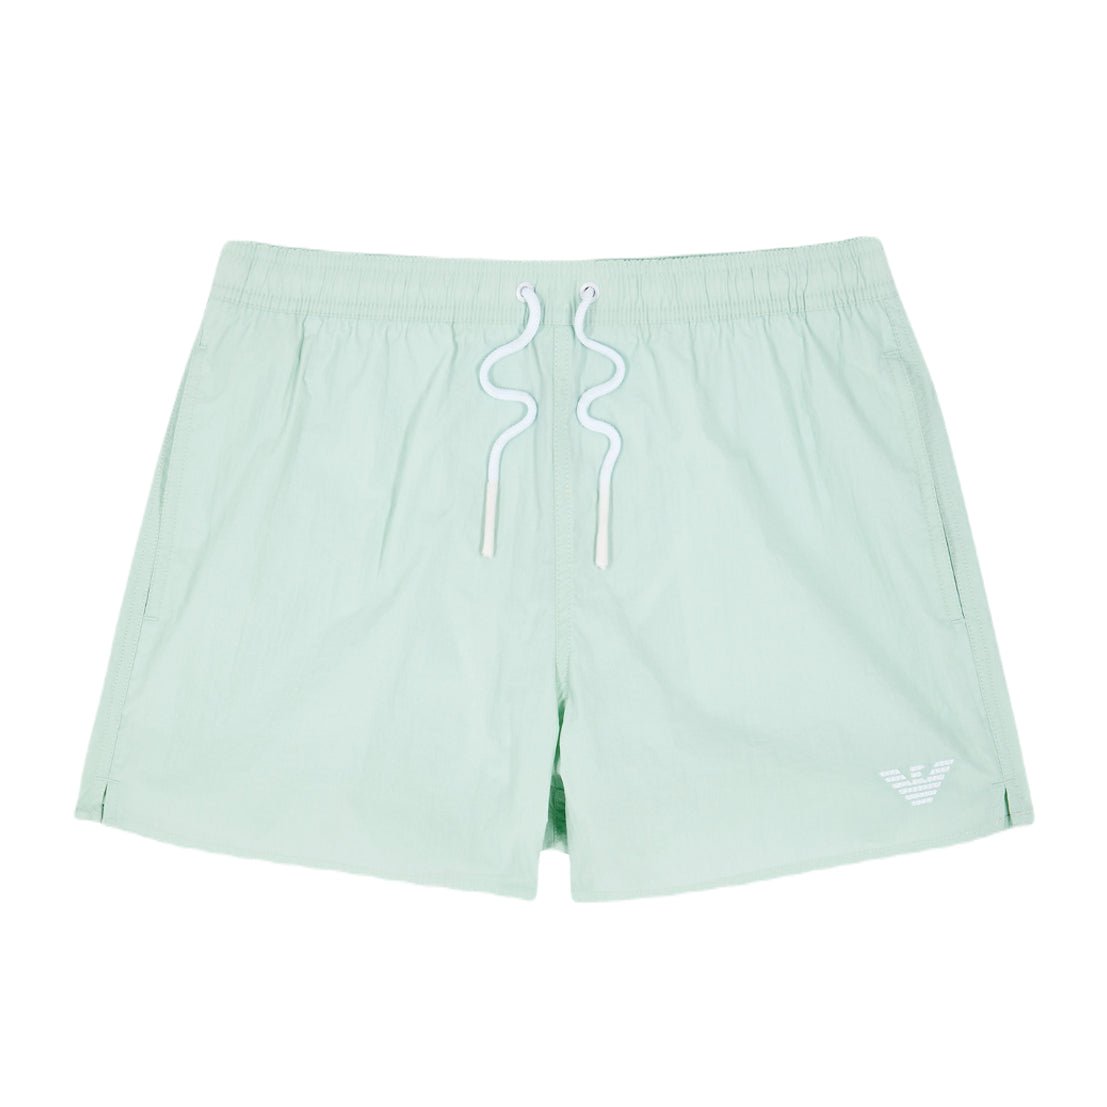 Emporio Armani Boxer Swim Shorts - Water Green - Escape Menswear